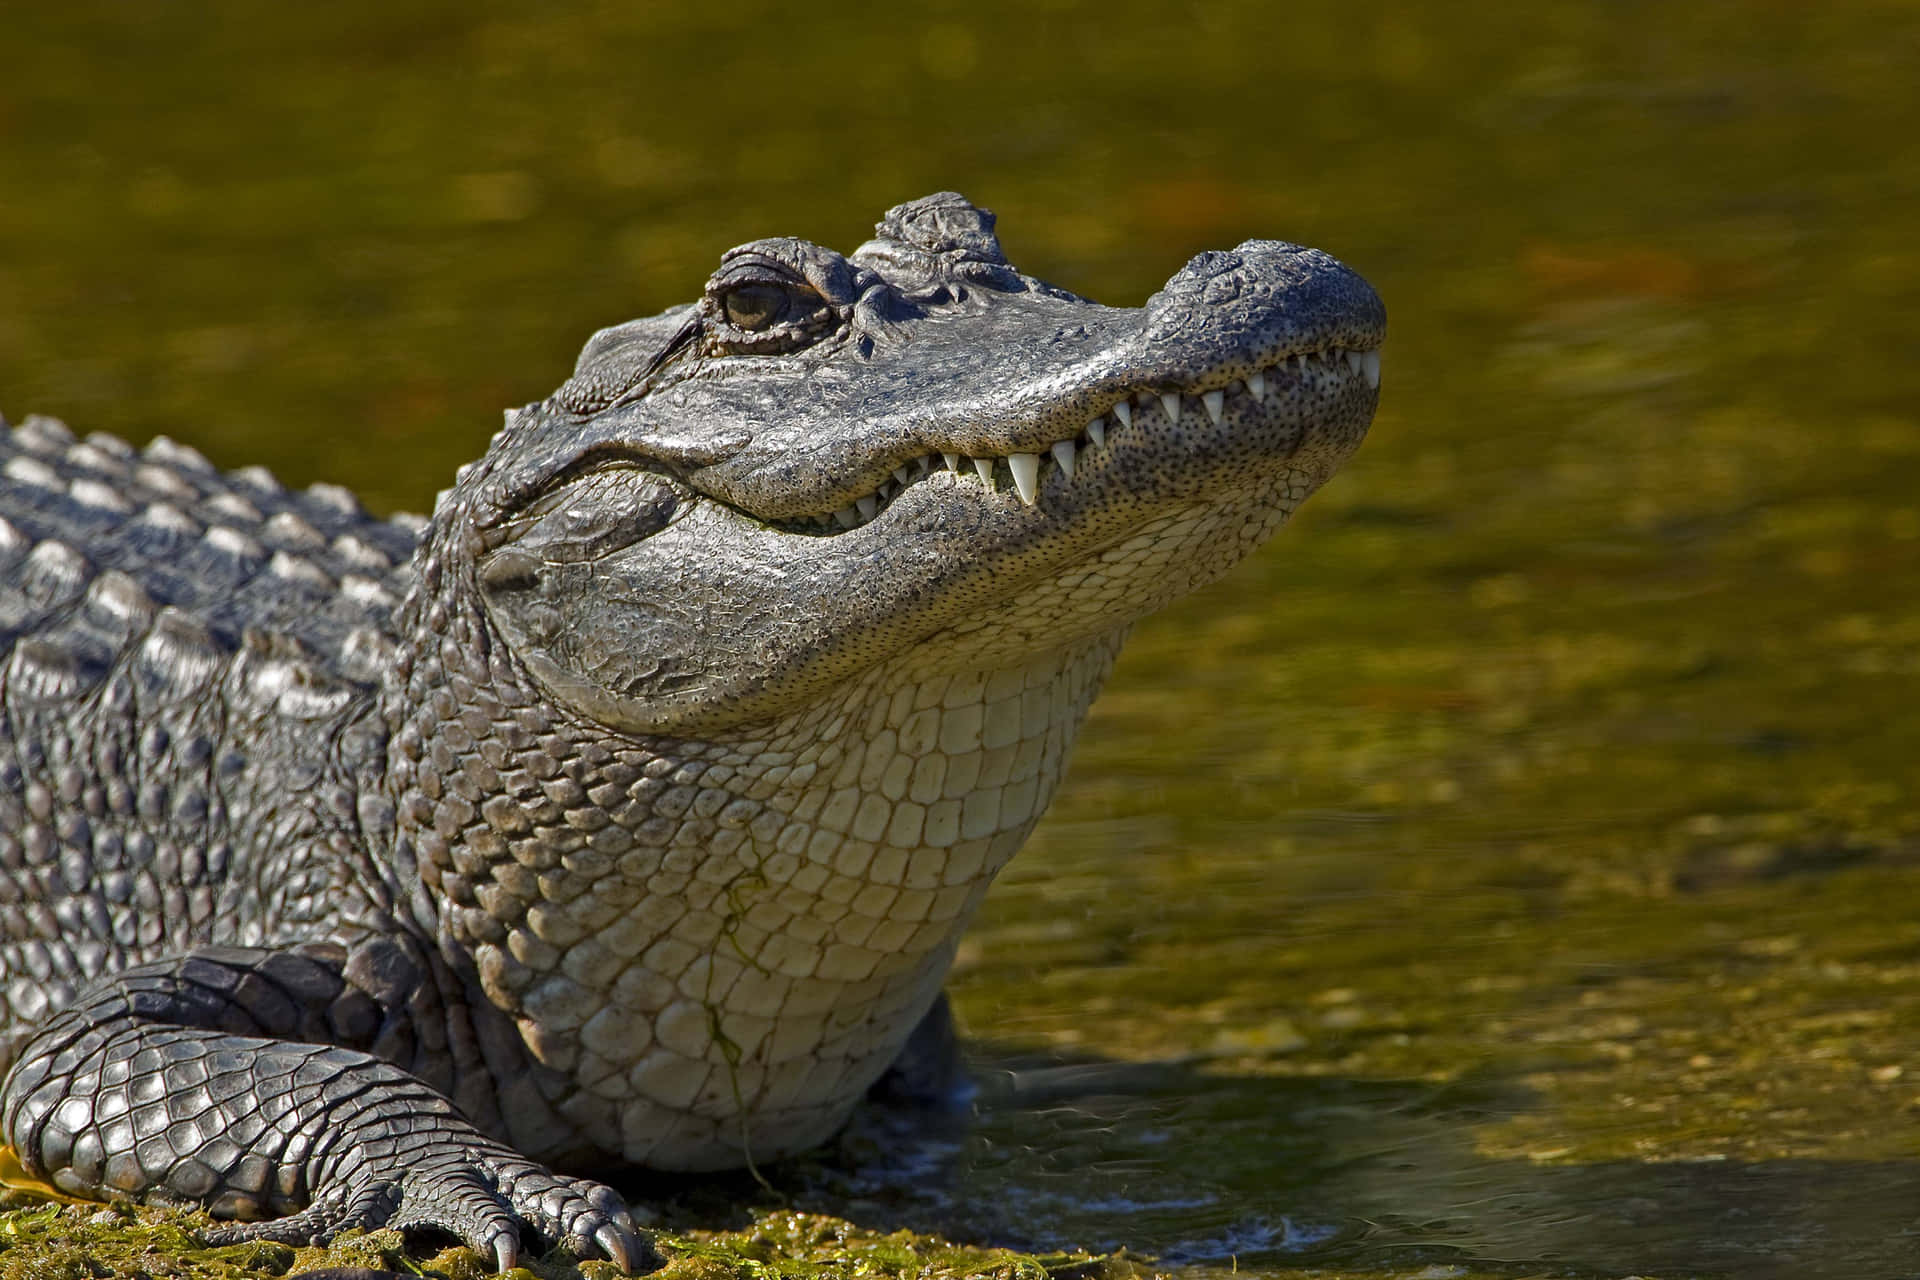 Etnærbillede Af En Alligators Skæl.